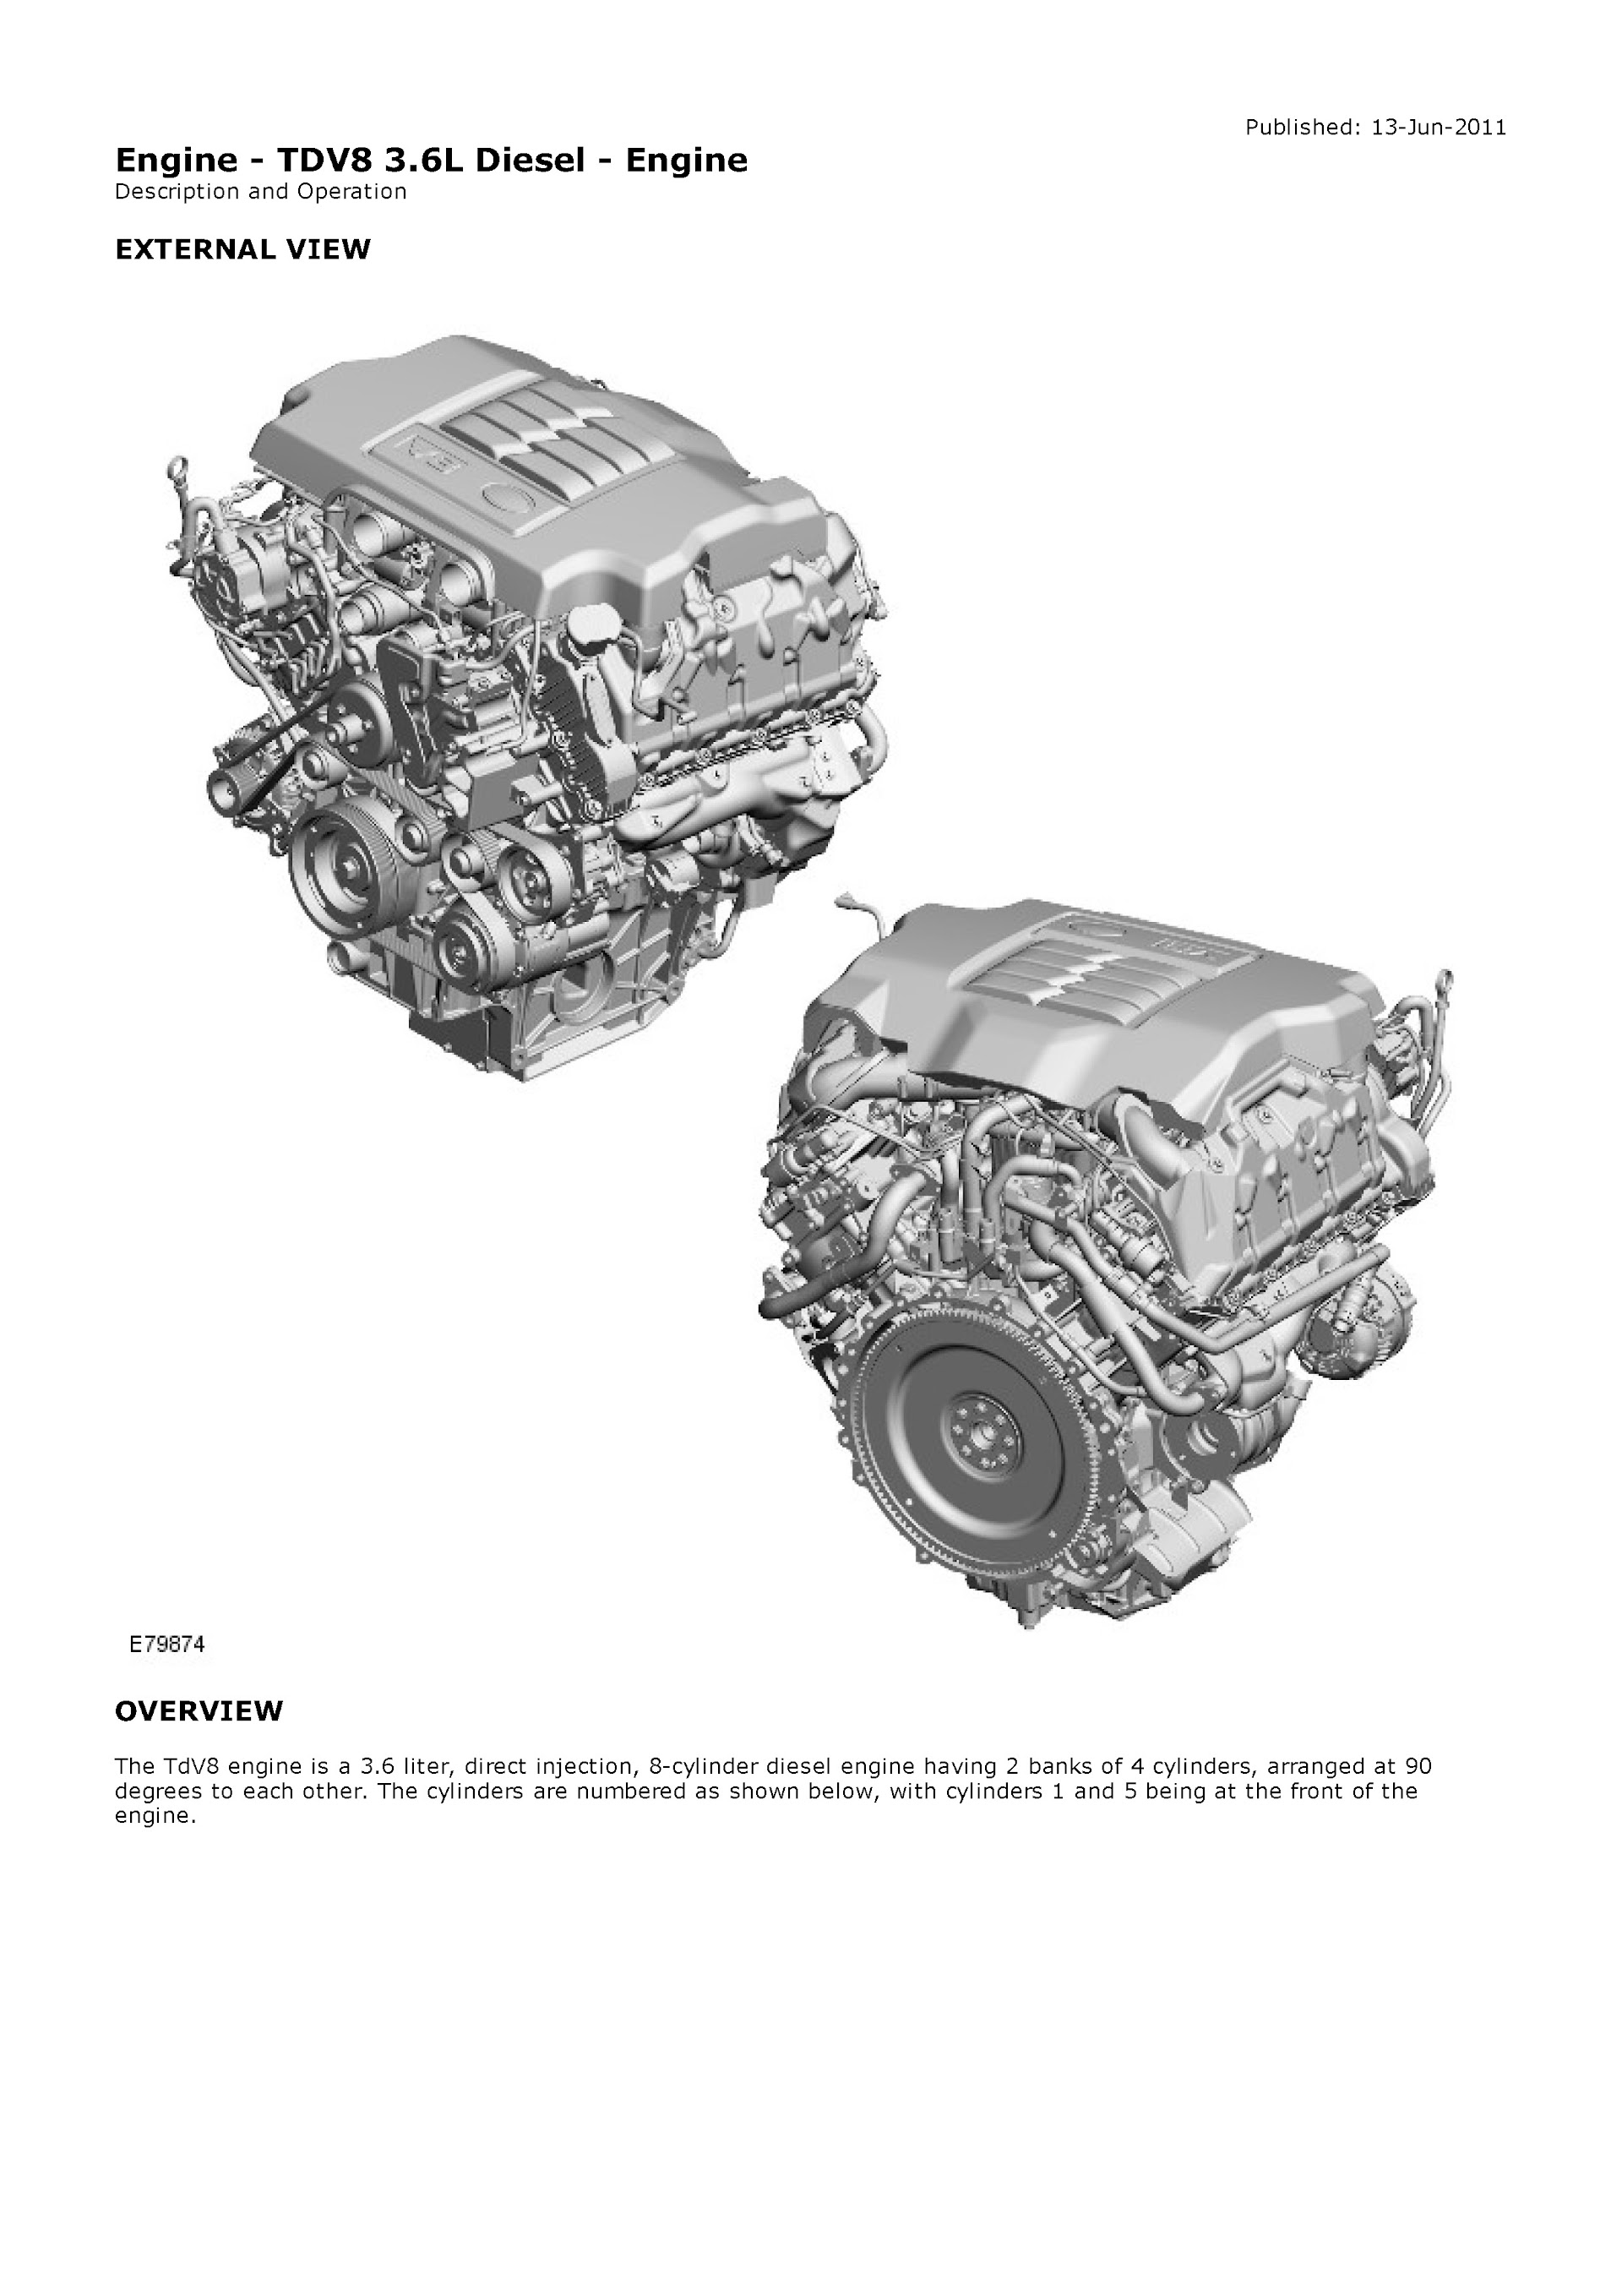 2010-2012 Range Rover L322 Repair Manual, TDV8 3.6L Diesel